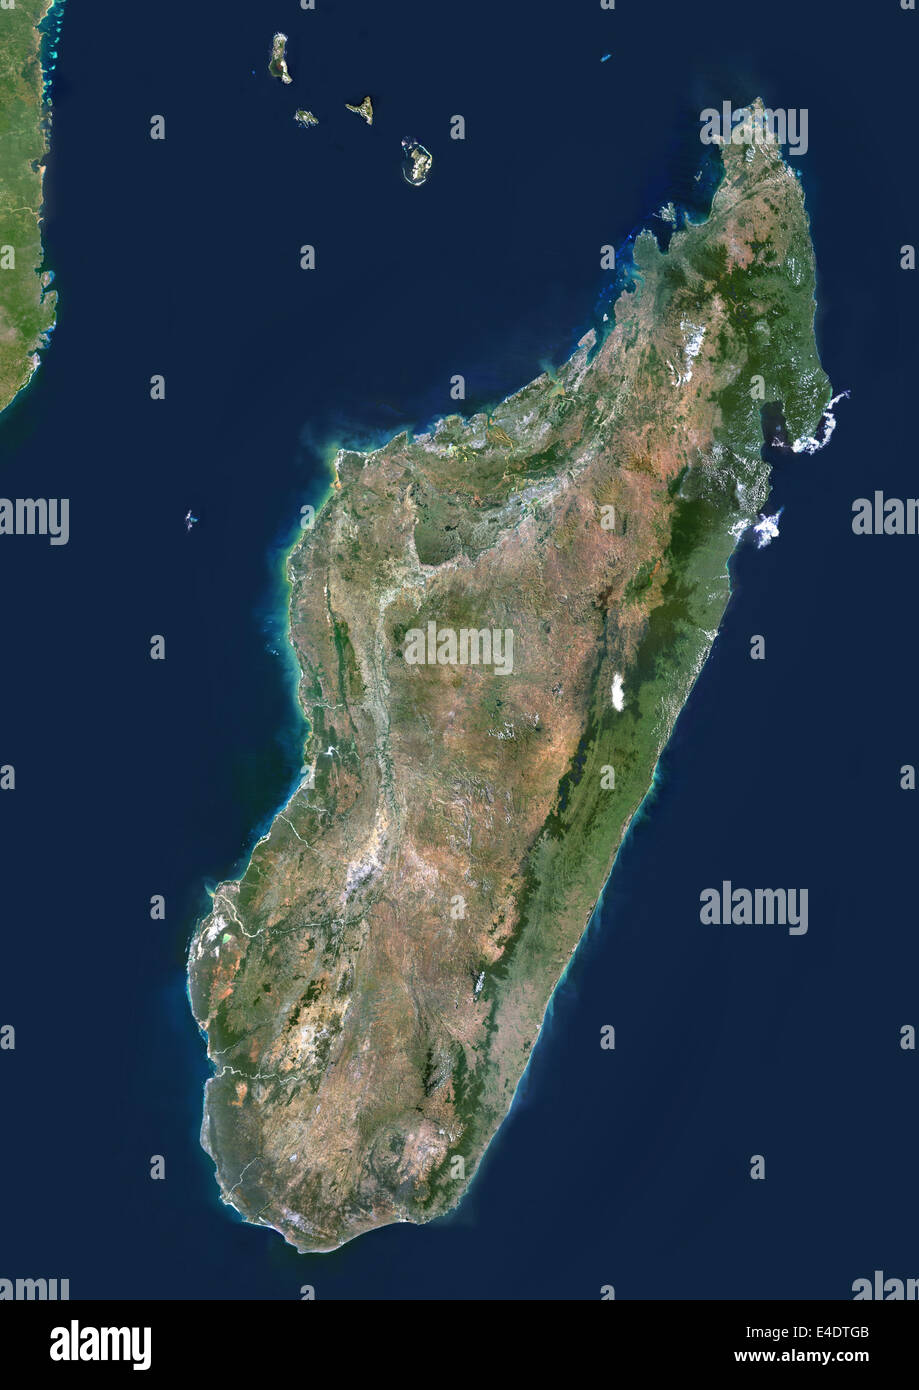 Madagaskar, Echtfarben-Satellitenbild. Madagaskar, Echtfarben-Satellitenbild. Dieses Bild wurde aus Daten zusammengestellt. Stockfoto